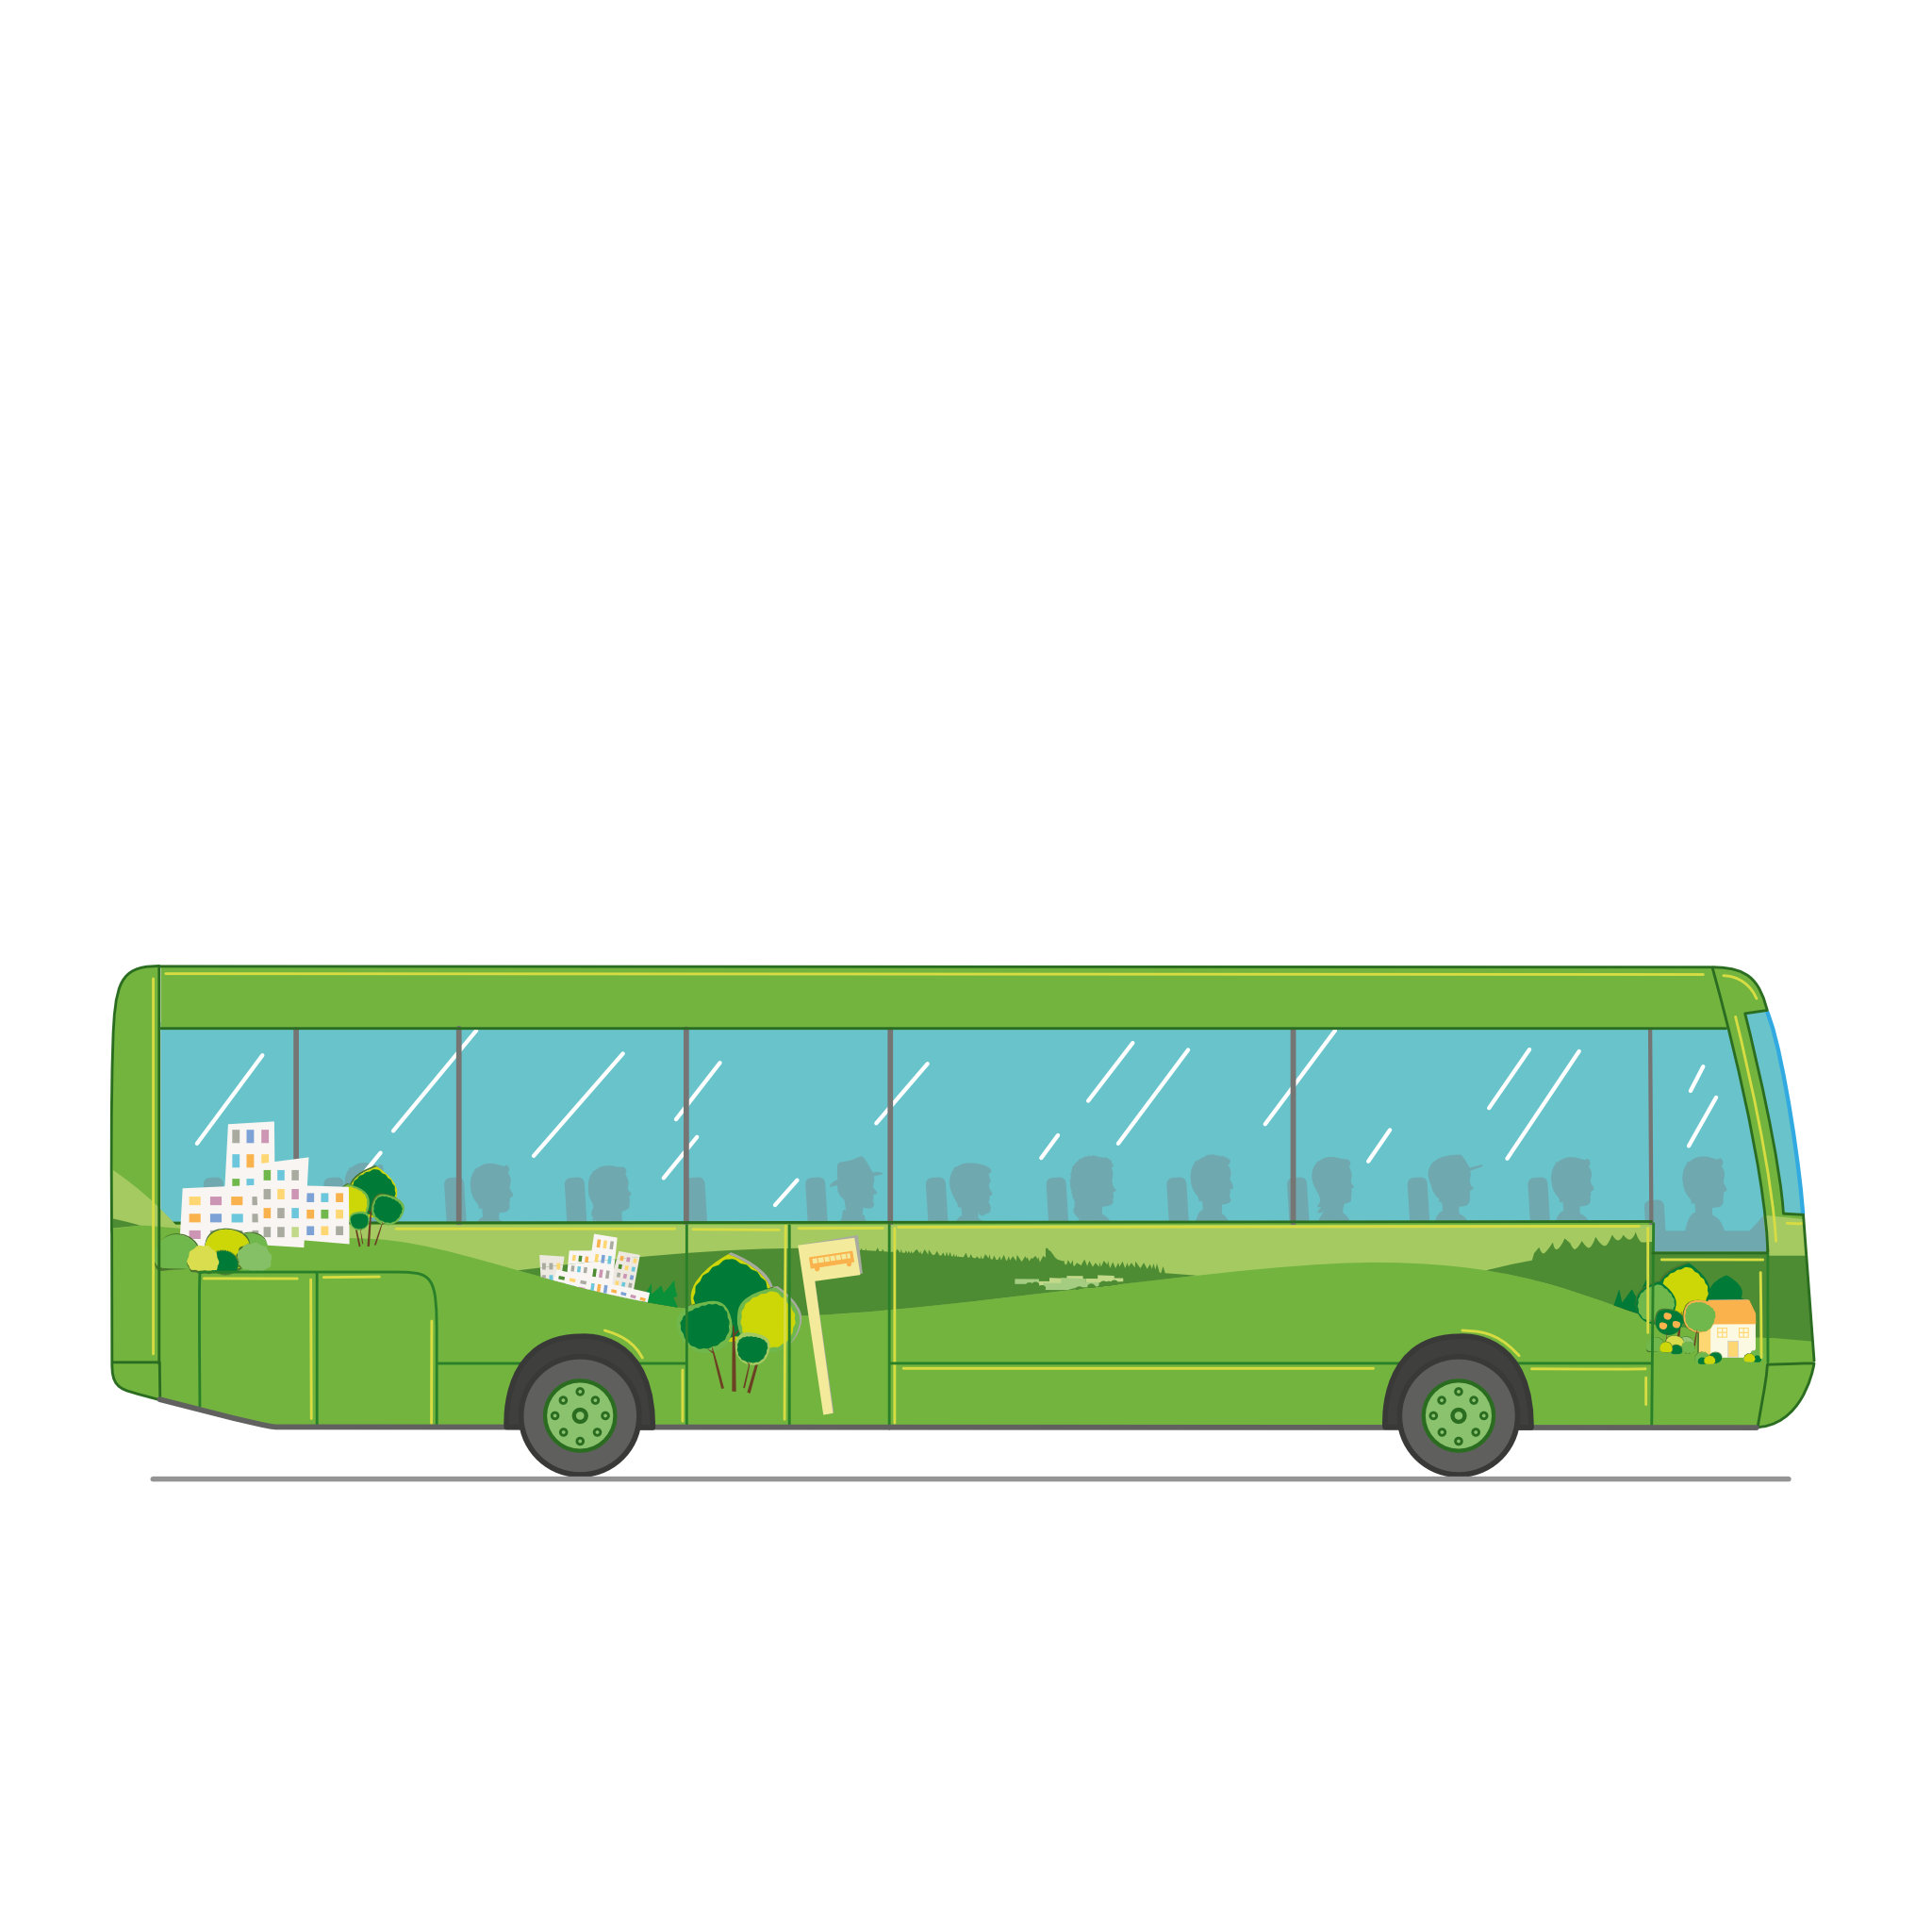 Kuvassa bussi tai linja-auto, jonka kyljessä on kuvia puistomaisemista